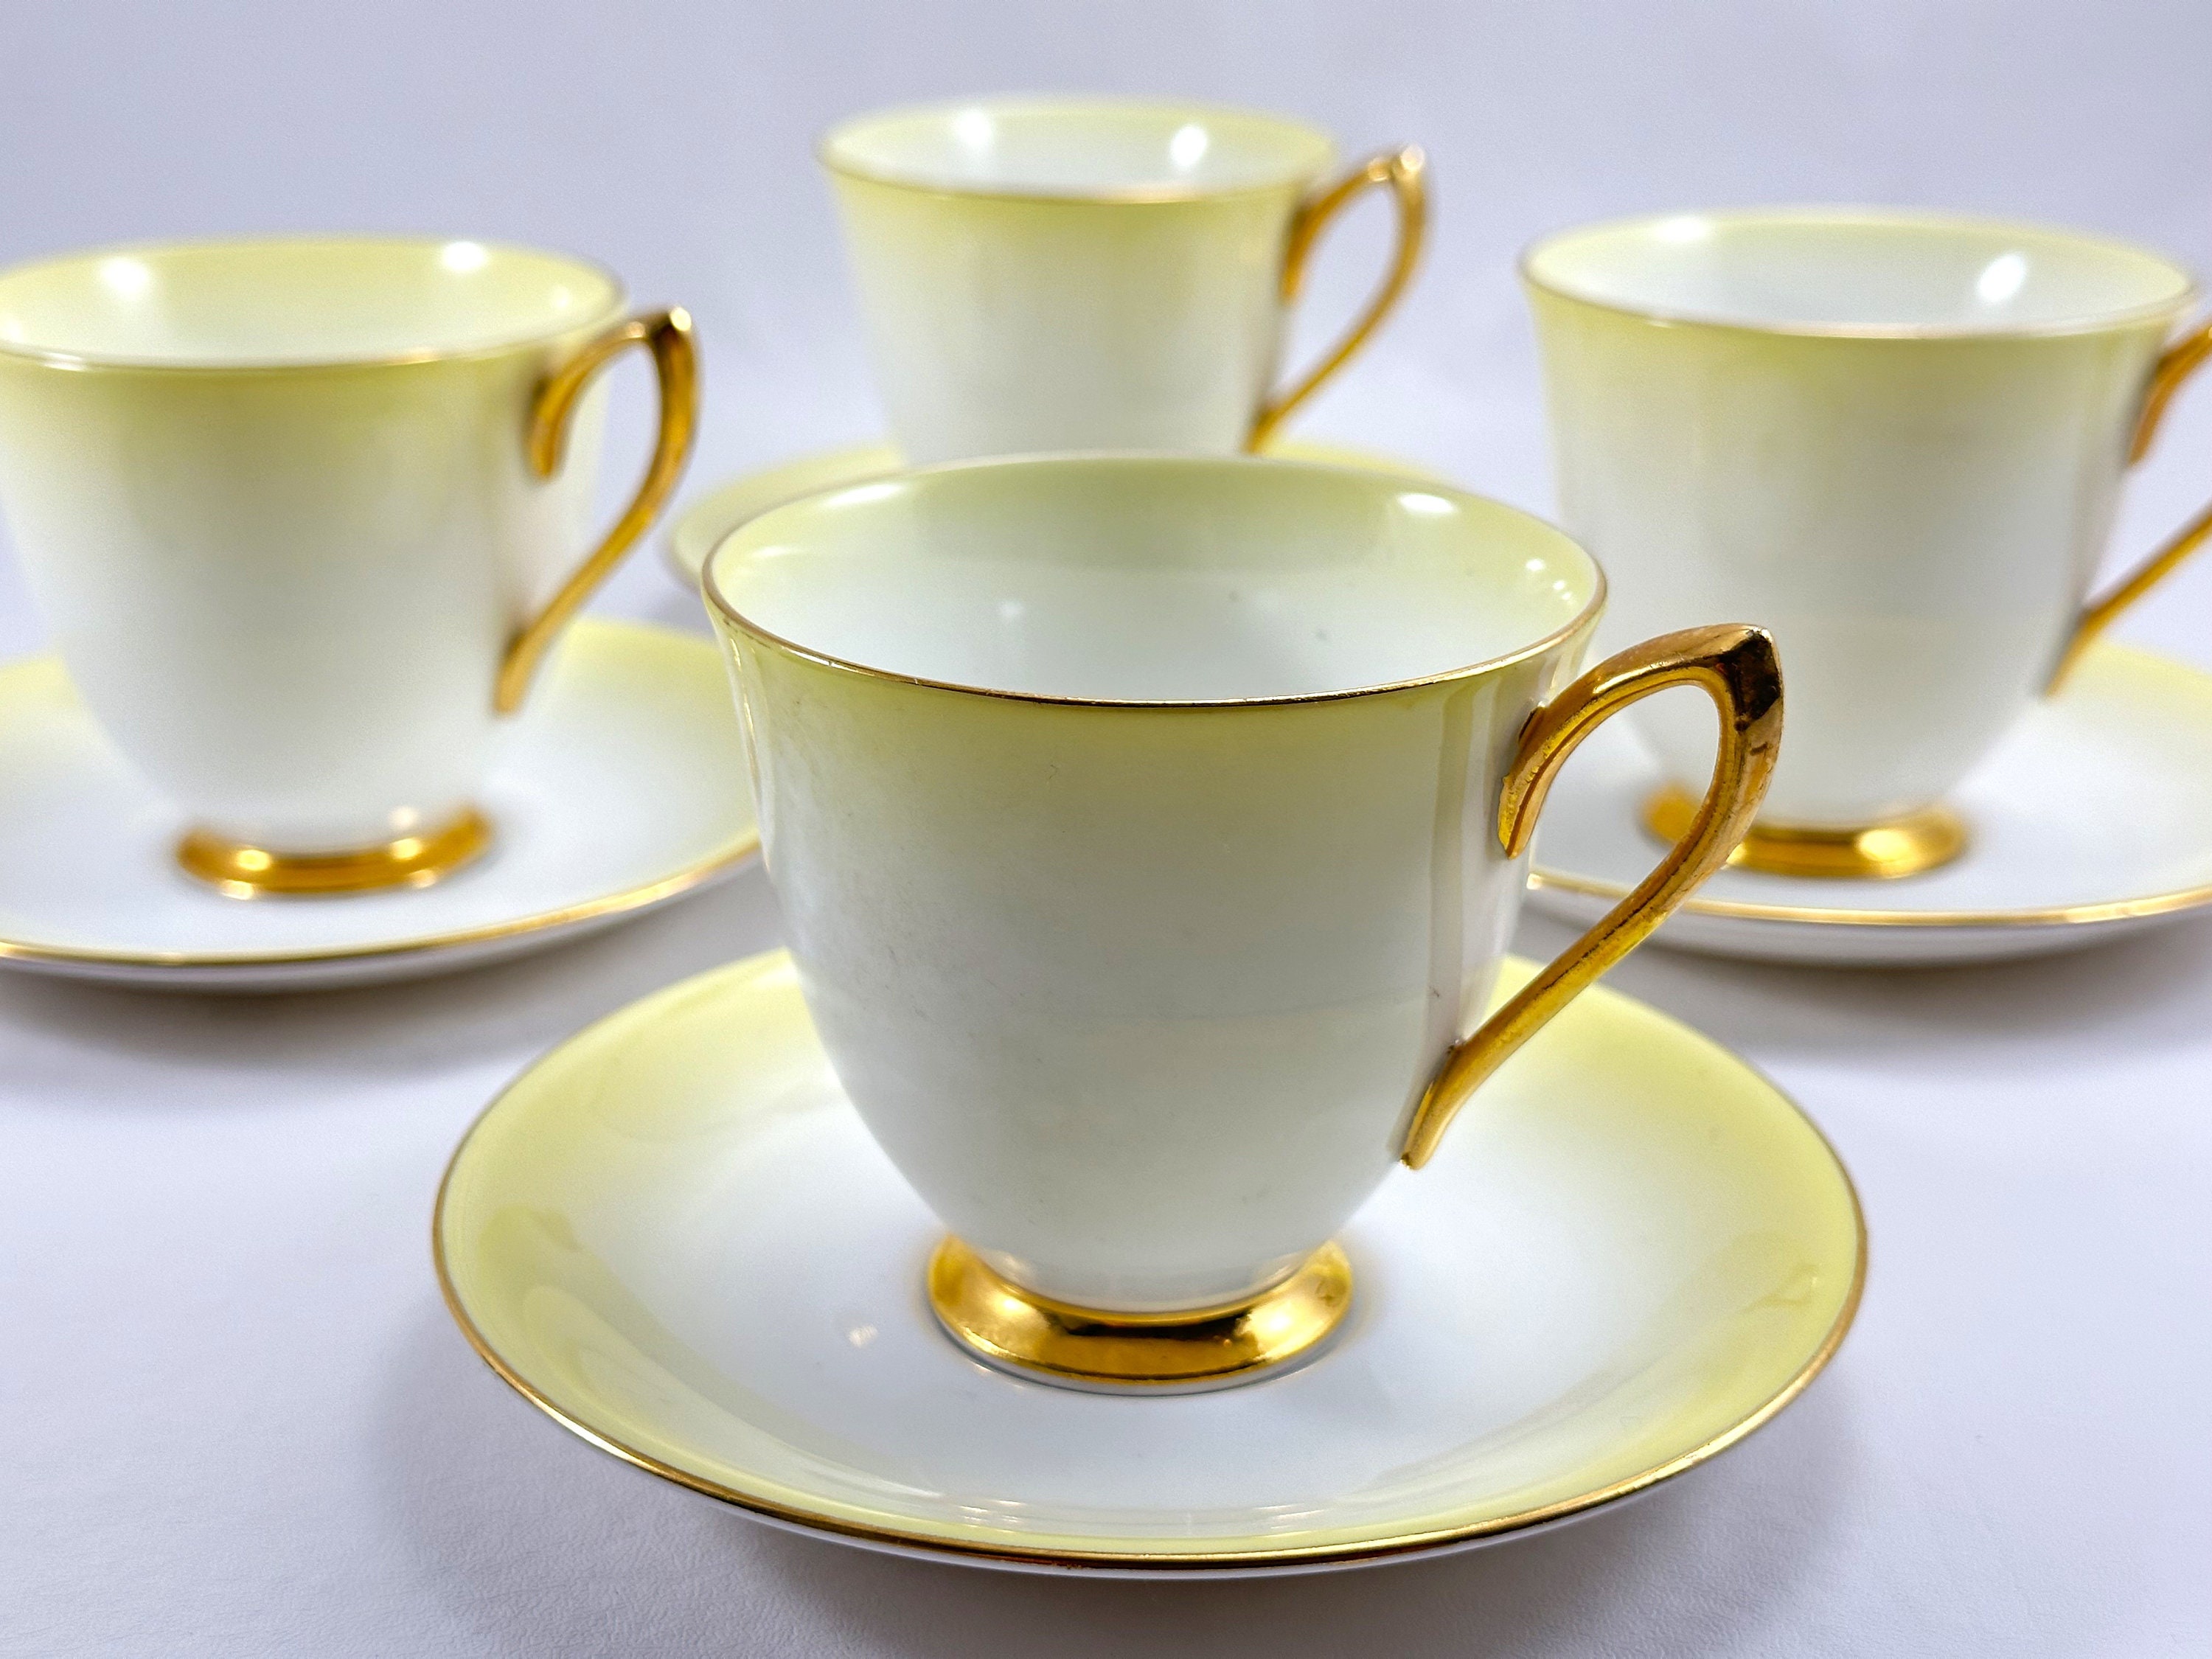 Set 6 Espresso Cups & Saucers Lemon Flowers